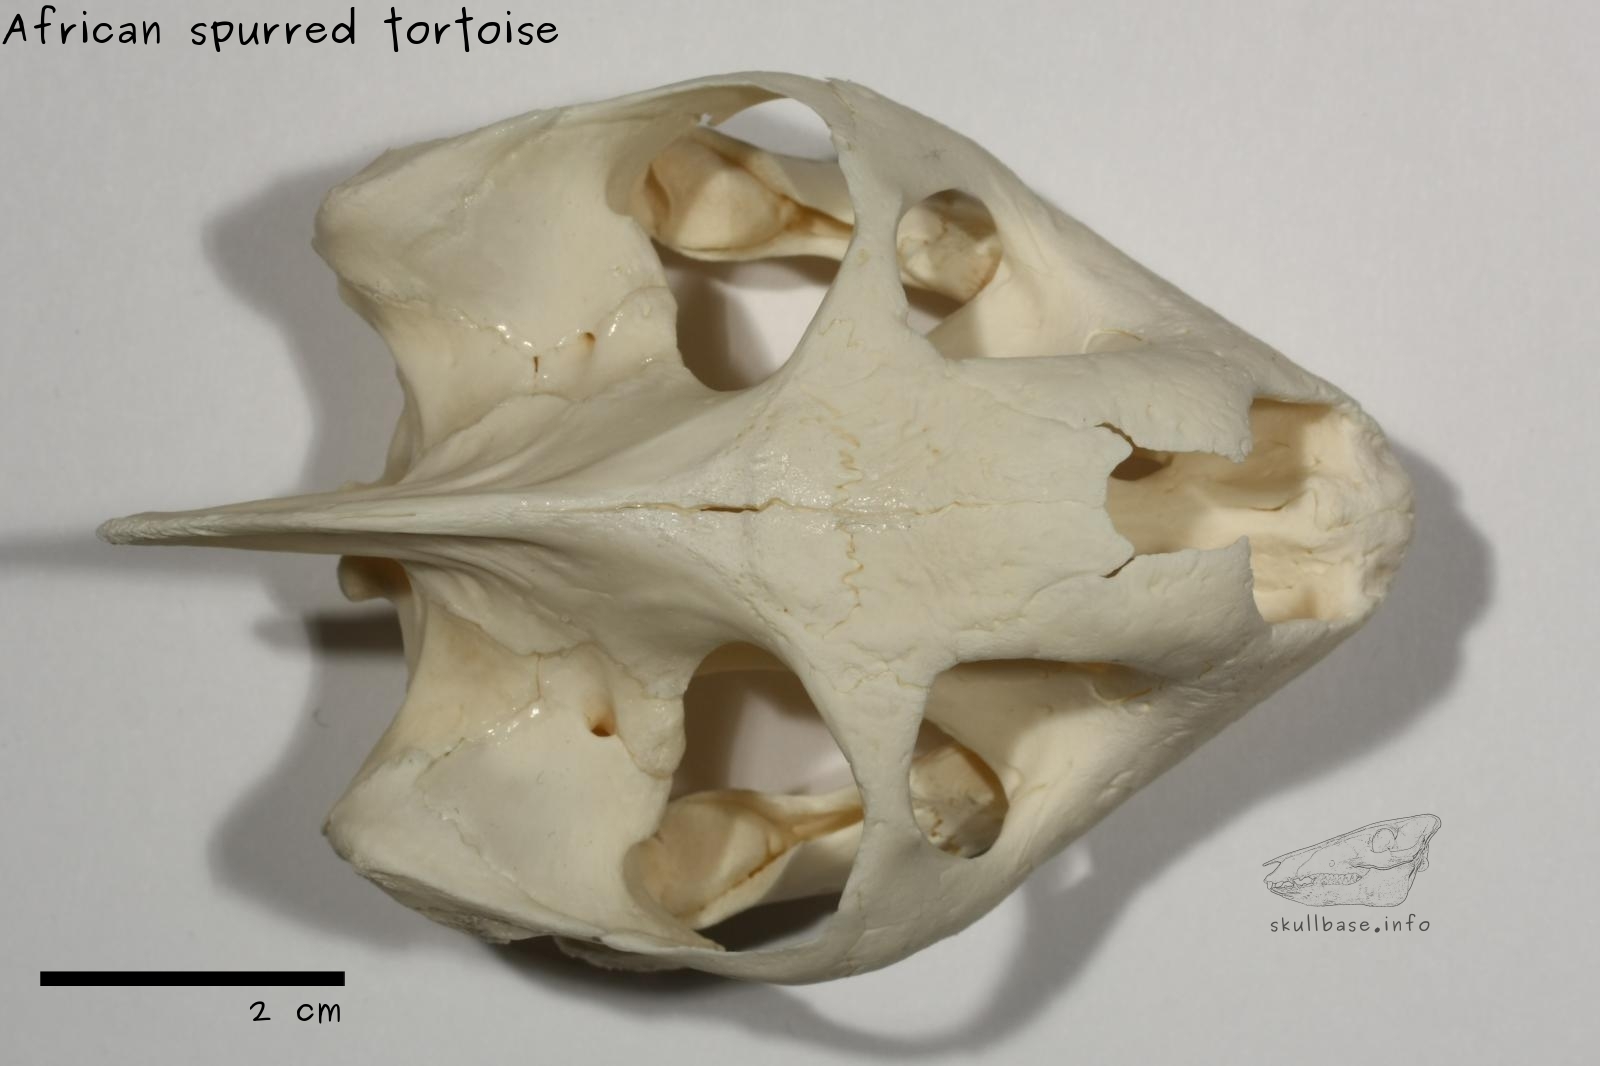 African spurred tortoise (Centrochelys sulcata) skull dorsal view